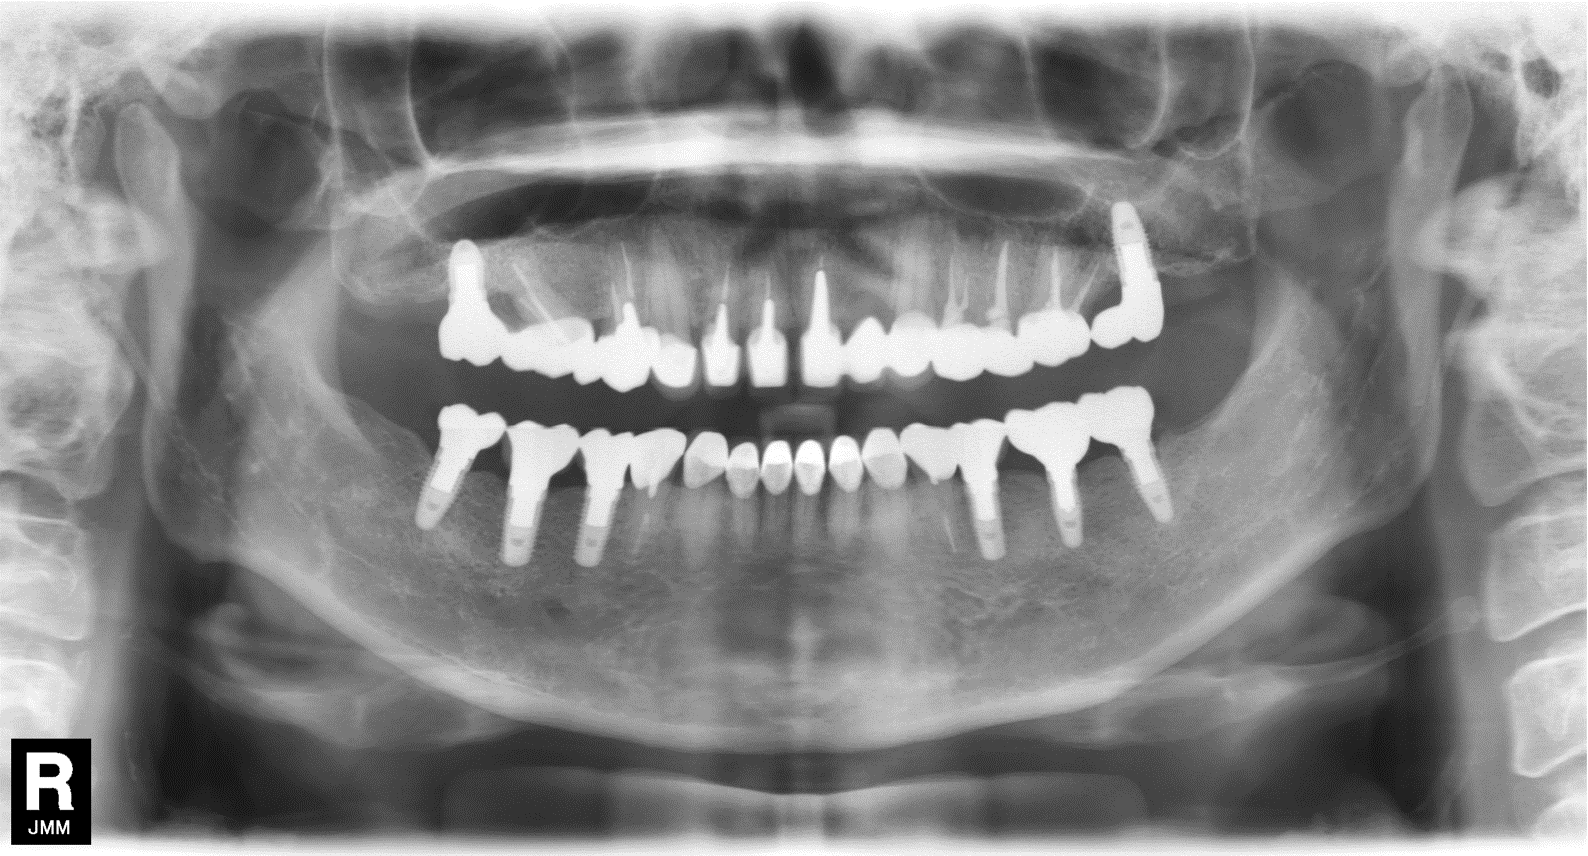 元住吉の歯医者のインプラント治療症例